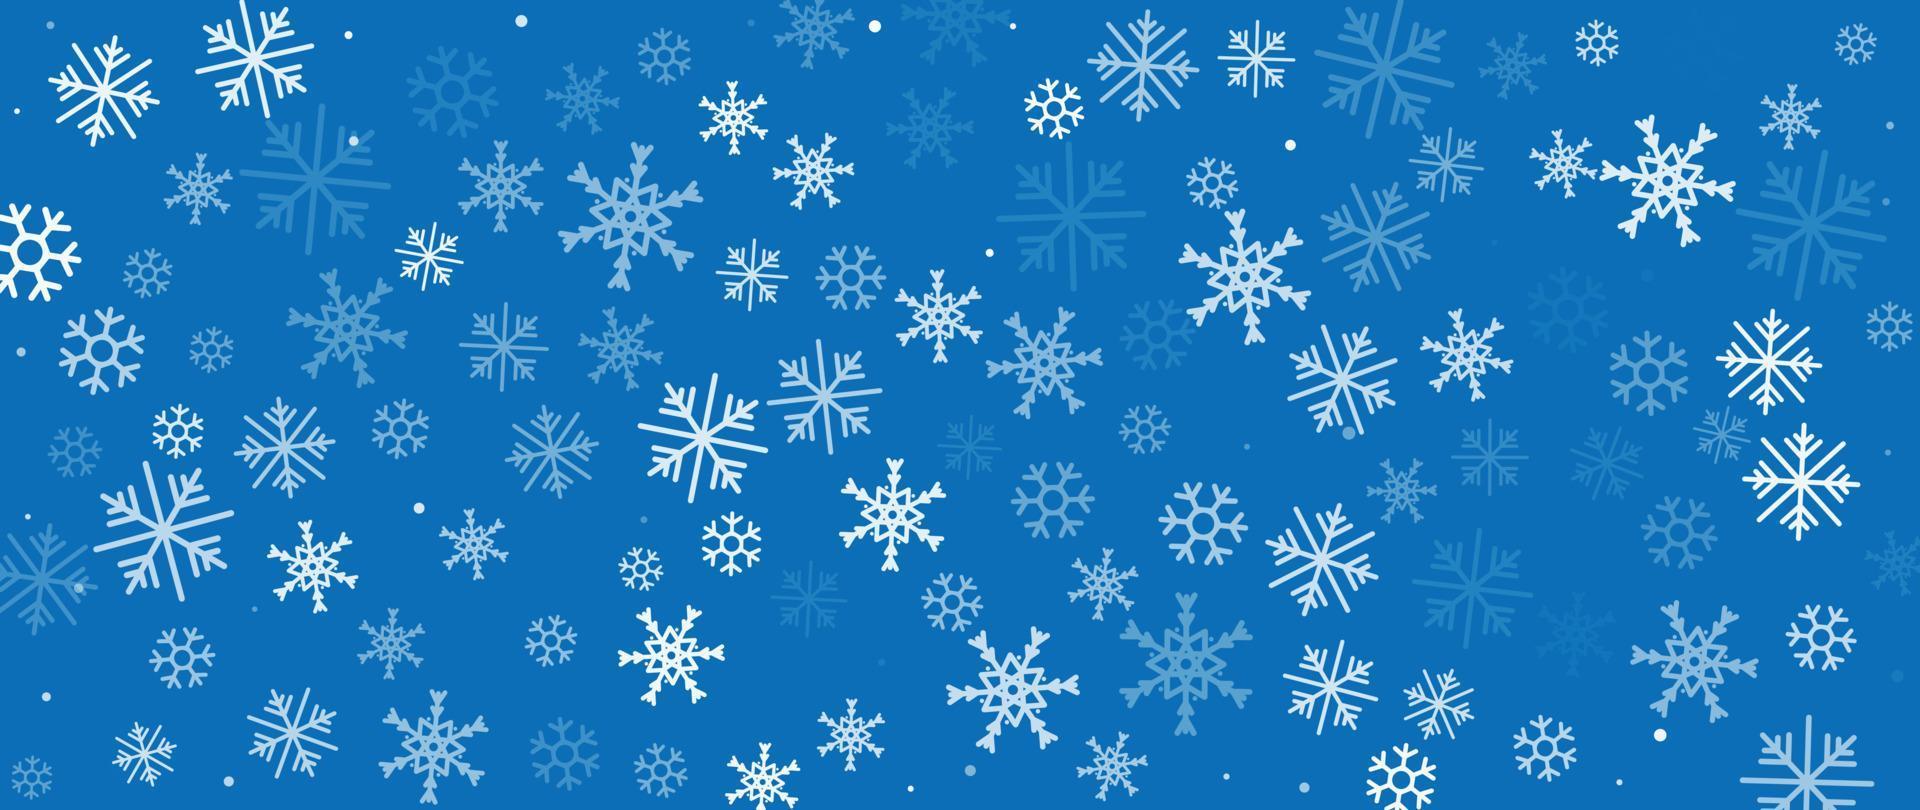 élégante illustration vectorielle de flocon de neige hiver fond. flocons de neige géométriques décoratifs de luxe avec fond bleu bokeh. conception adaptée à la carte d'invitation, aux voeux, au papier peint, à l'affiche, à la bannière. vecteur